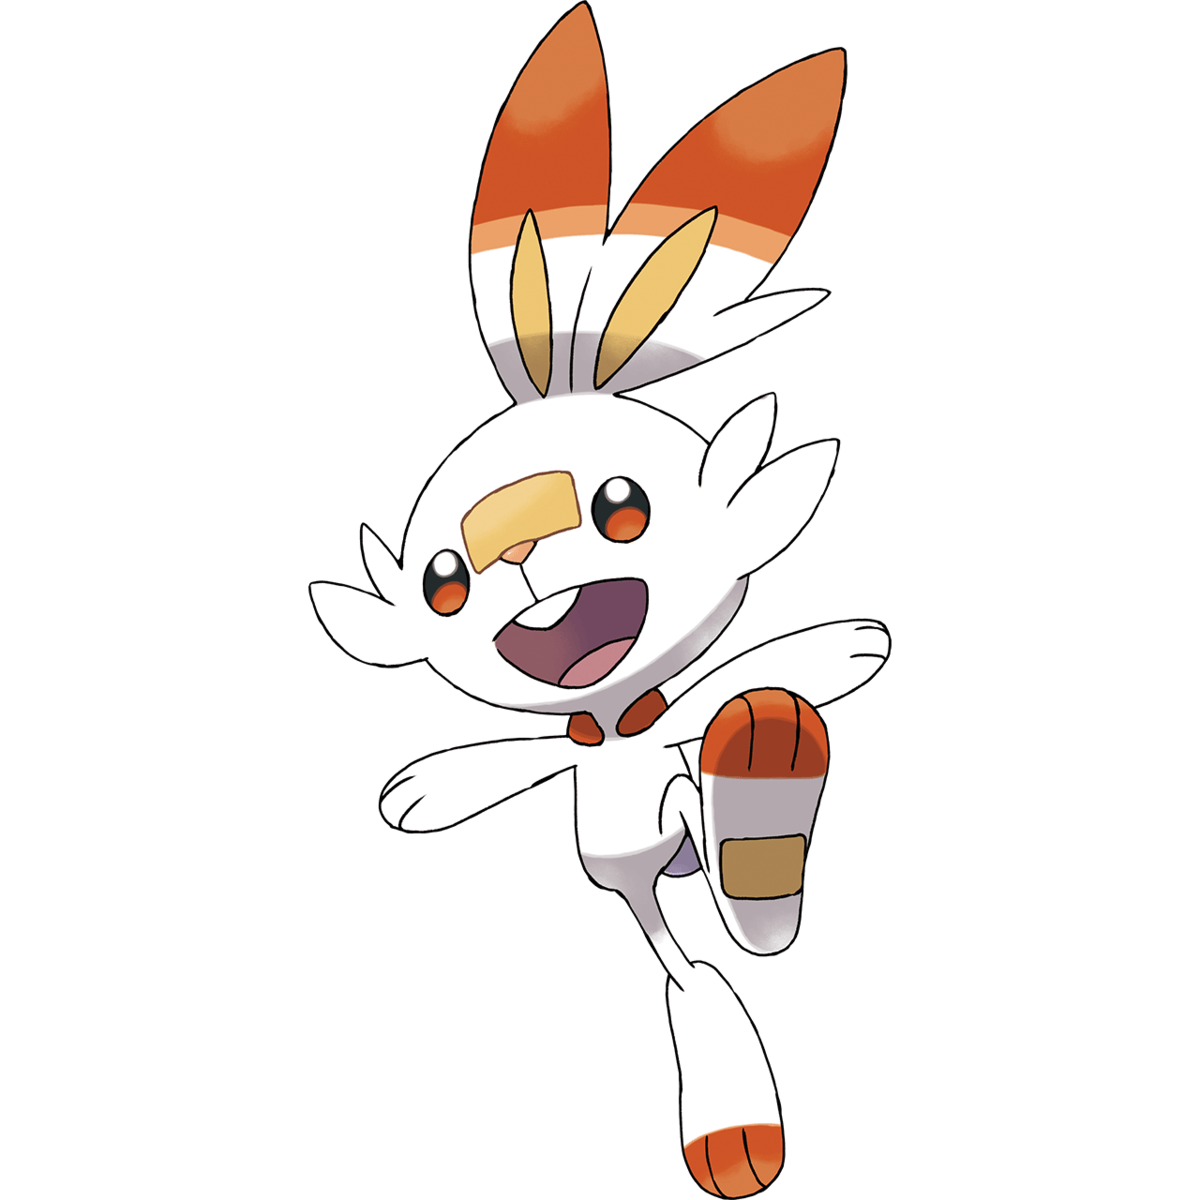 Scorbunny (Pokémon), The Community Driven Pokémon